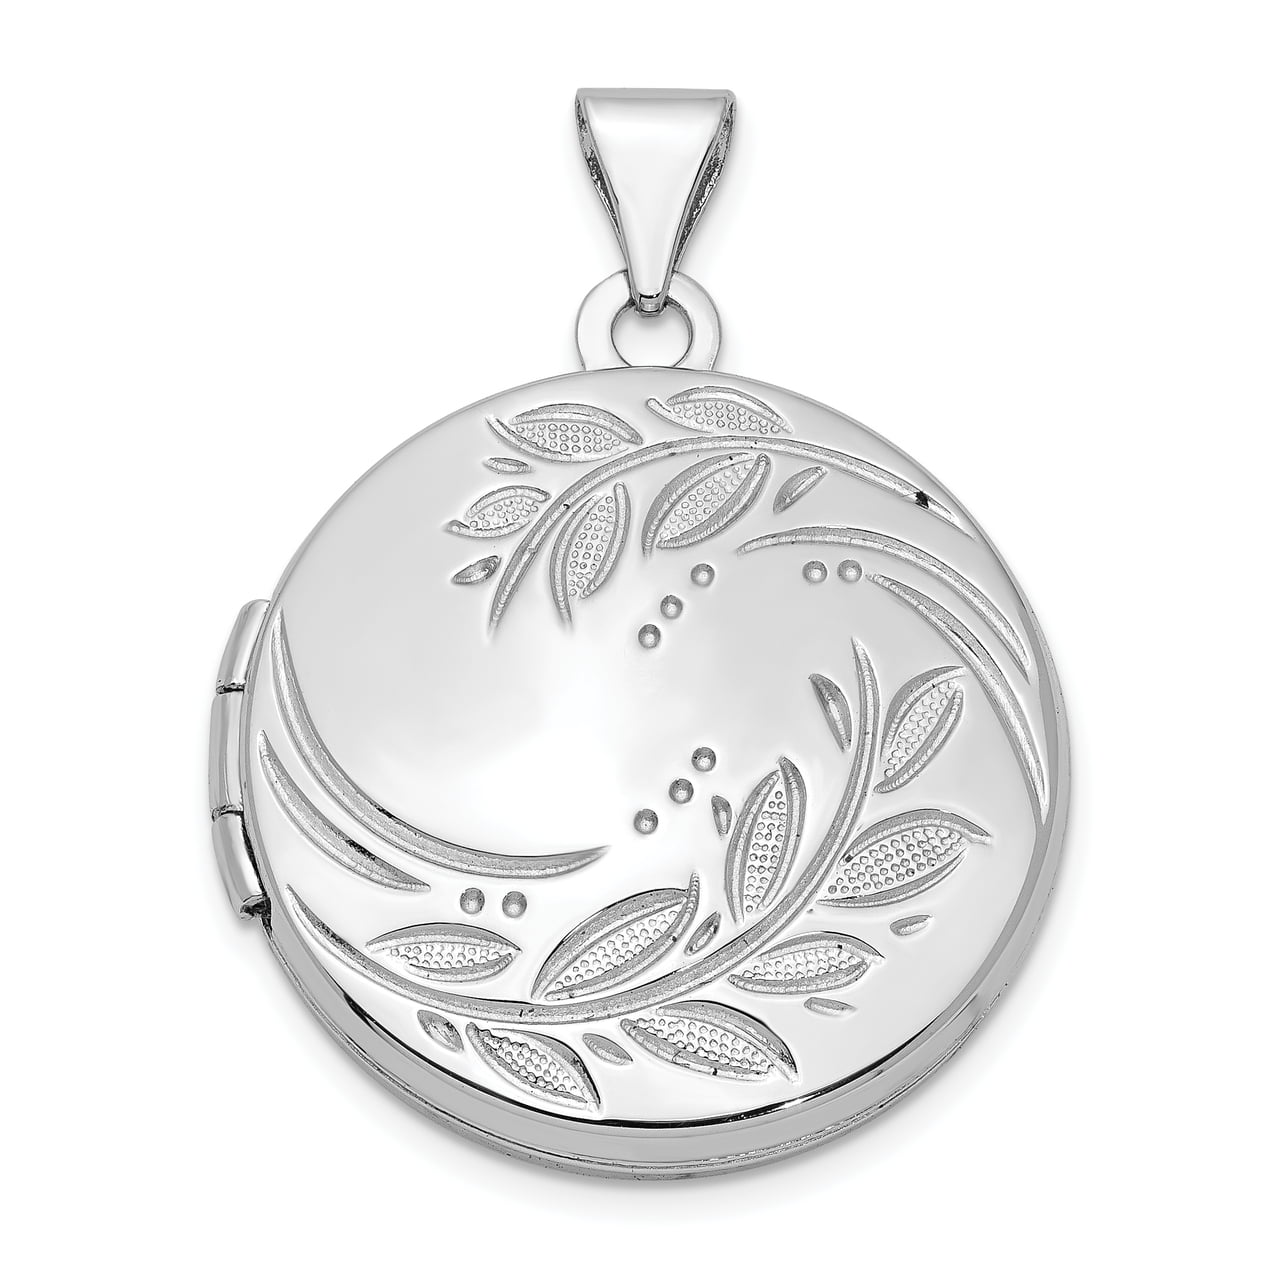 Details about   .925 Sterling Silver Round Leaf Floral Locket Charm Pendant MSRP $117 